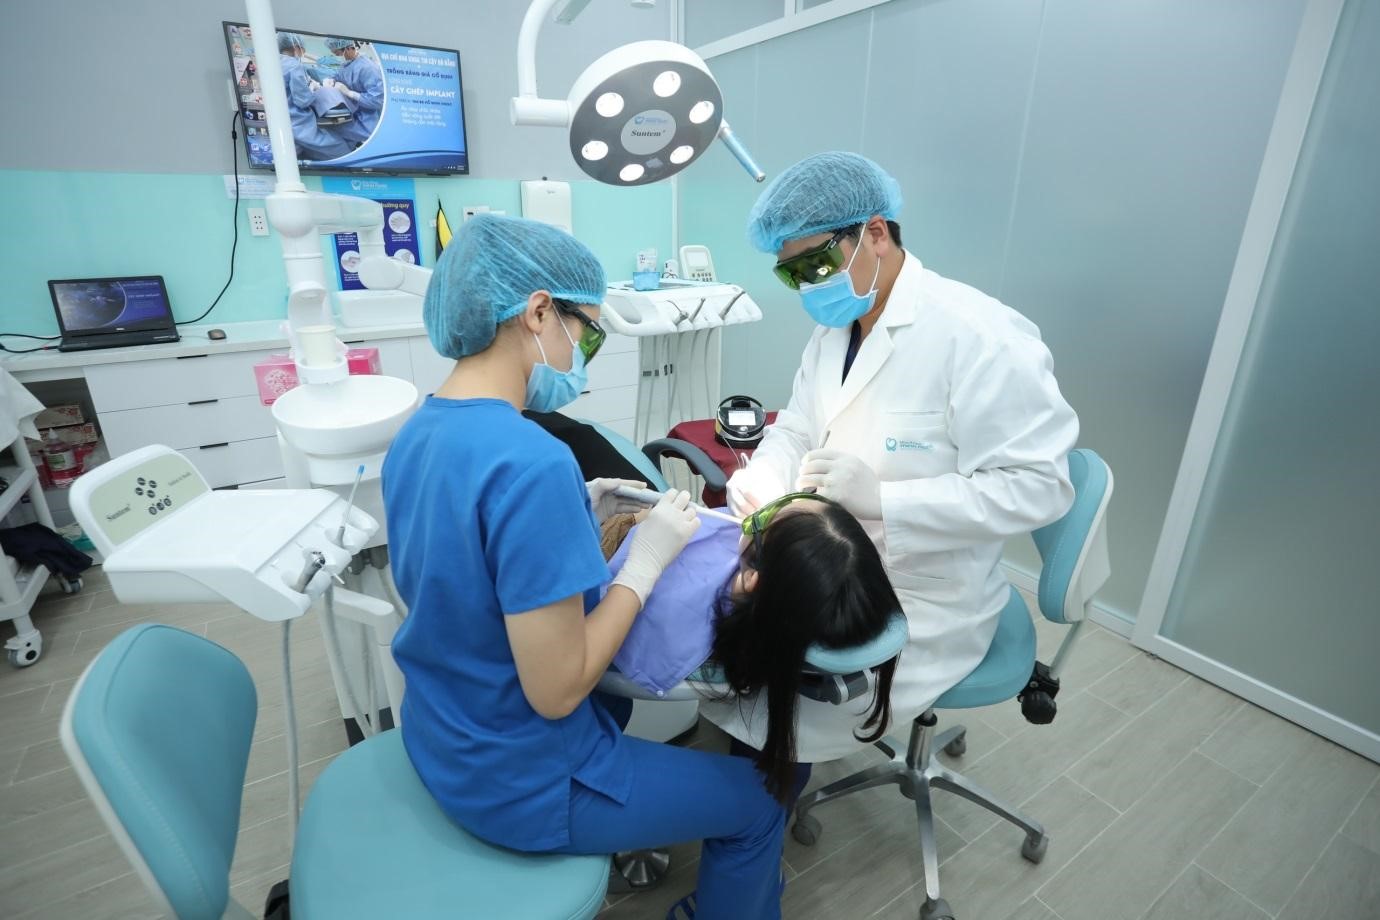 Nha khoa Minh Ngọc - Beauty Dental Clinic: Nơi hội tụ nghệ thuật và khoa học trong nha khoa thẩm mỹ - ảnh 2